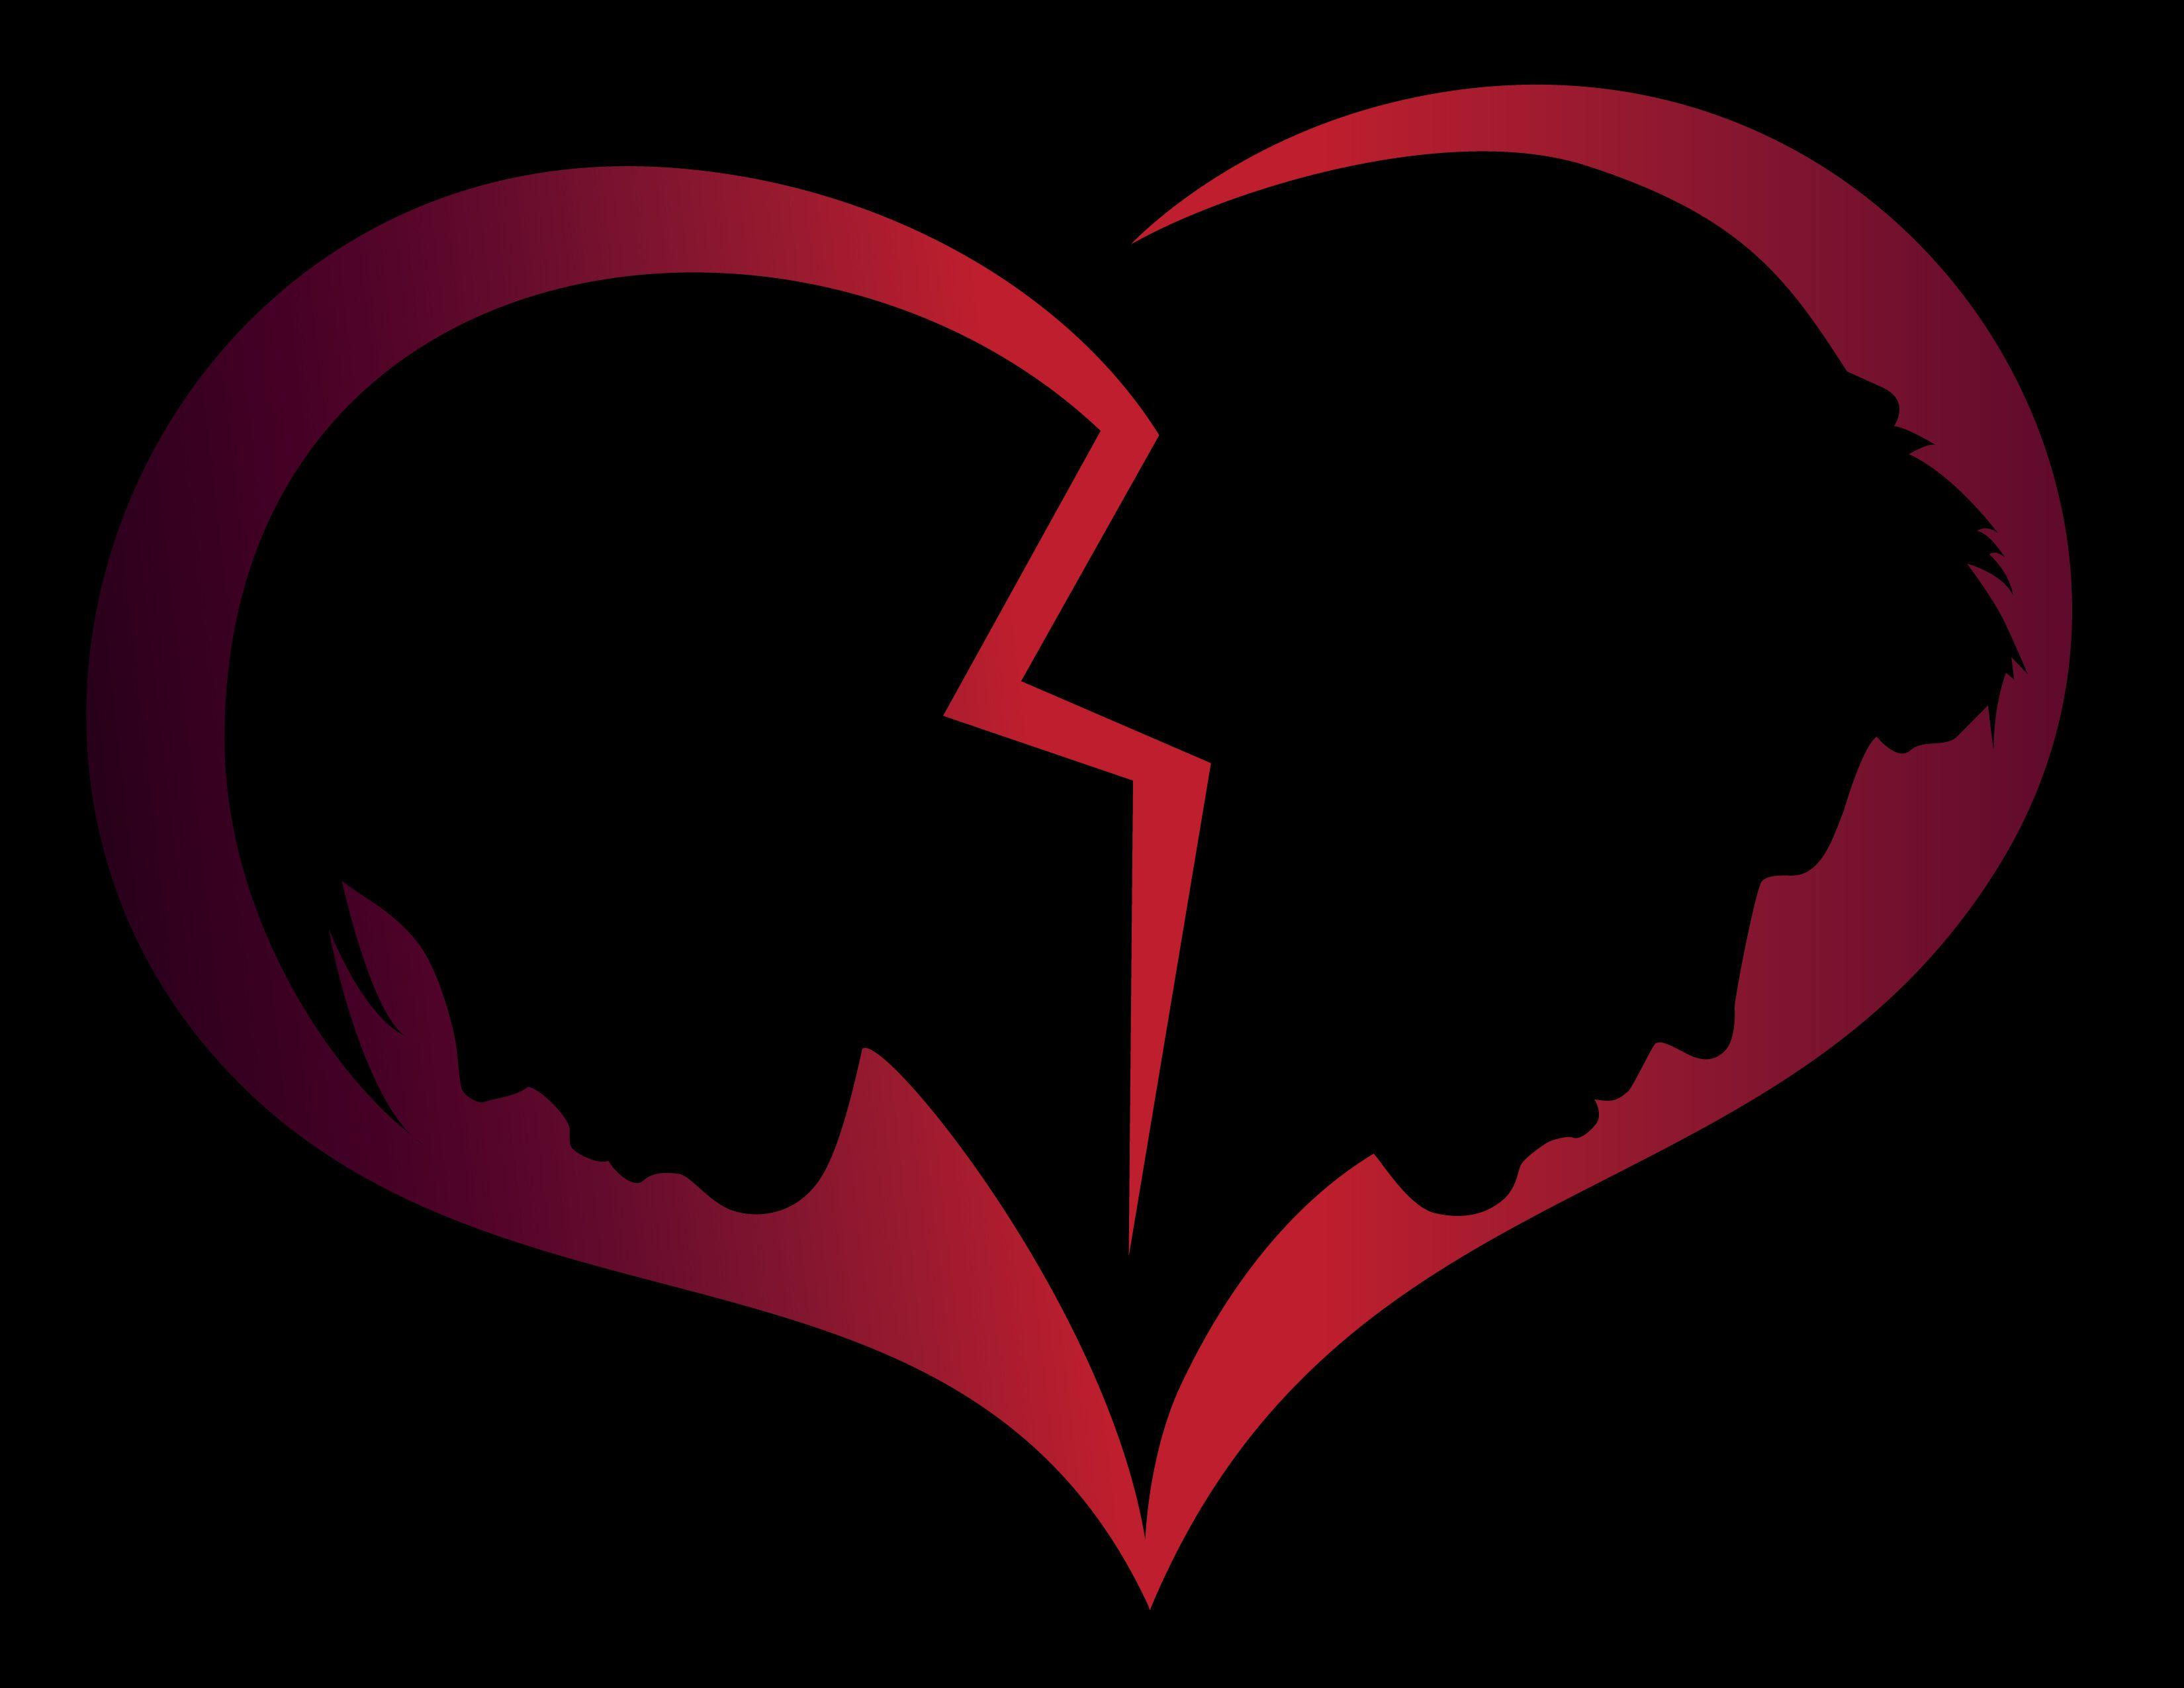 Heartbroken Logo - Free Broken Heart, Download Free